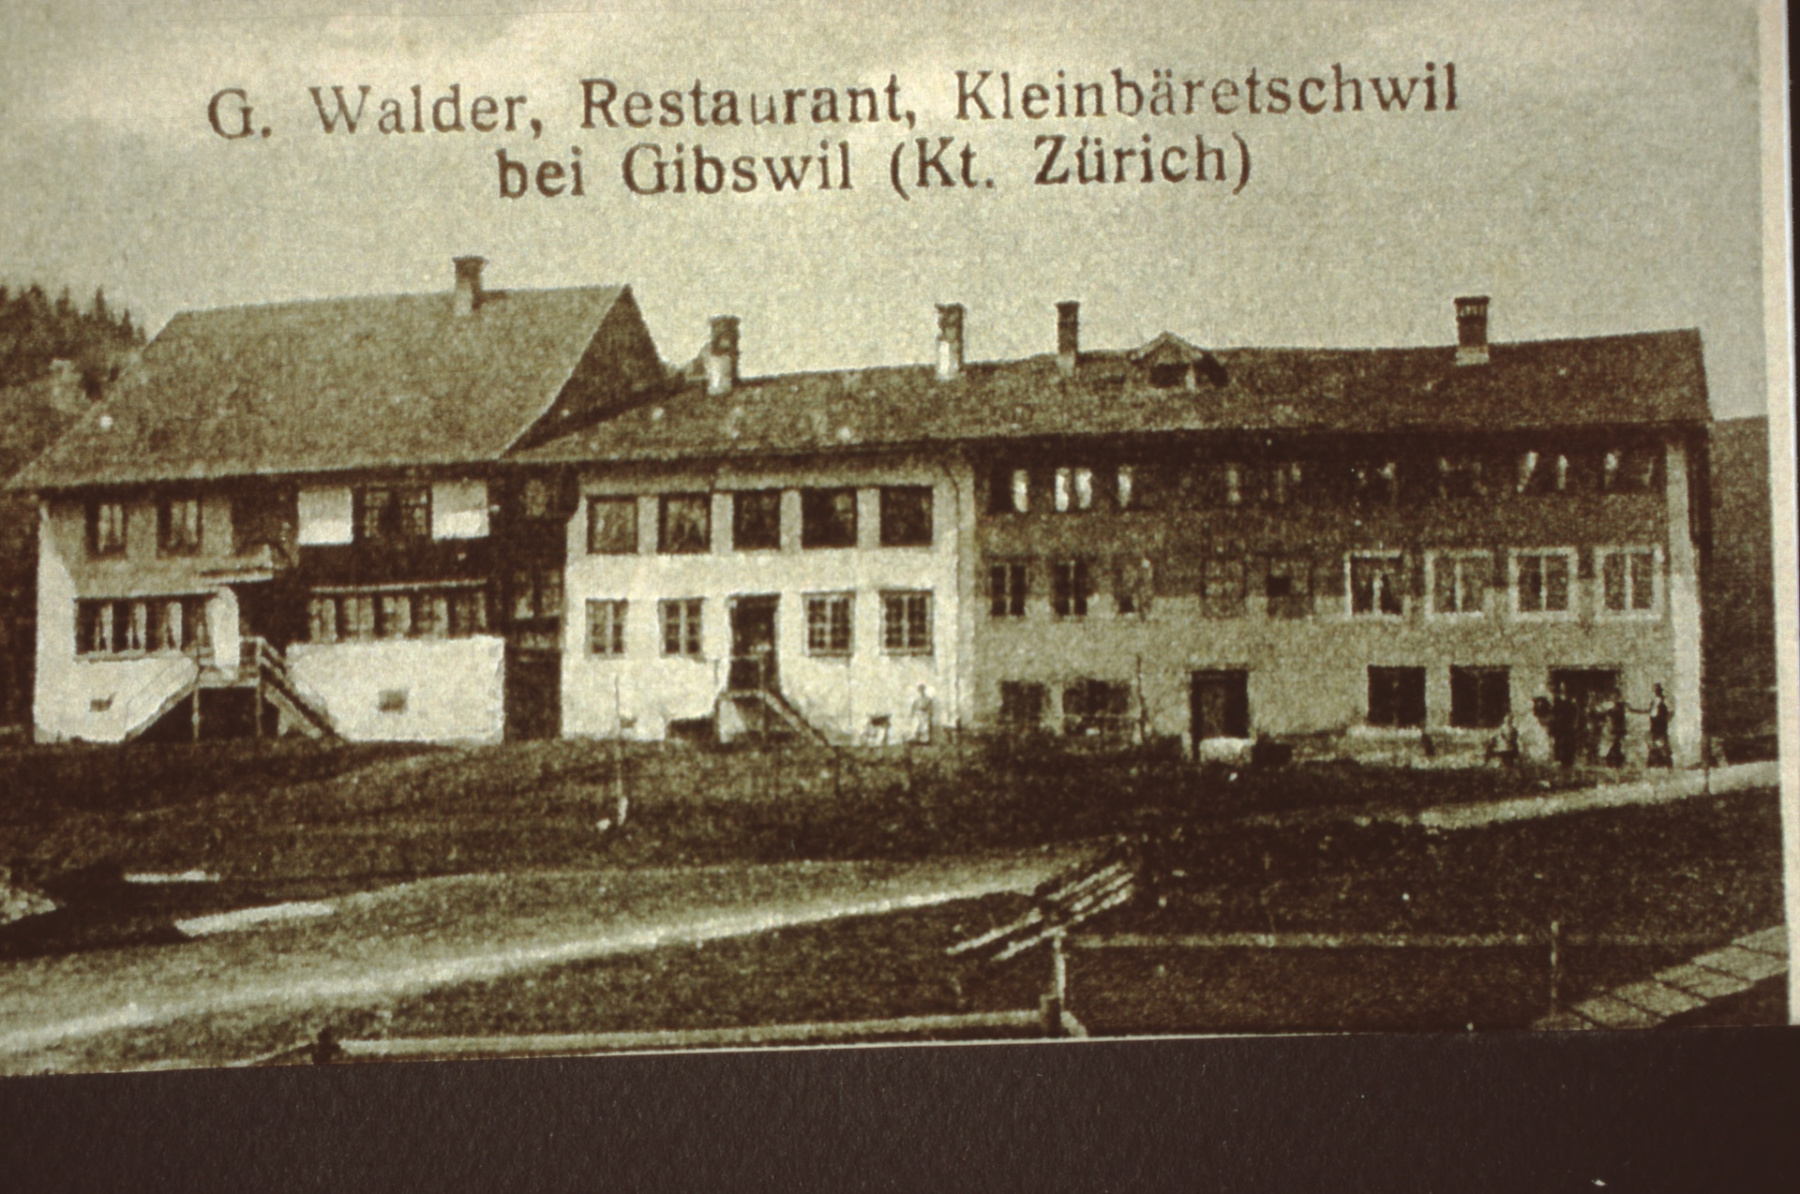 Detail Flarz Chloster (gehörte zum Kloster St. Gallen) mit rt Restaurant Walder/Glärnischblick